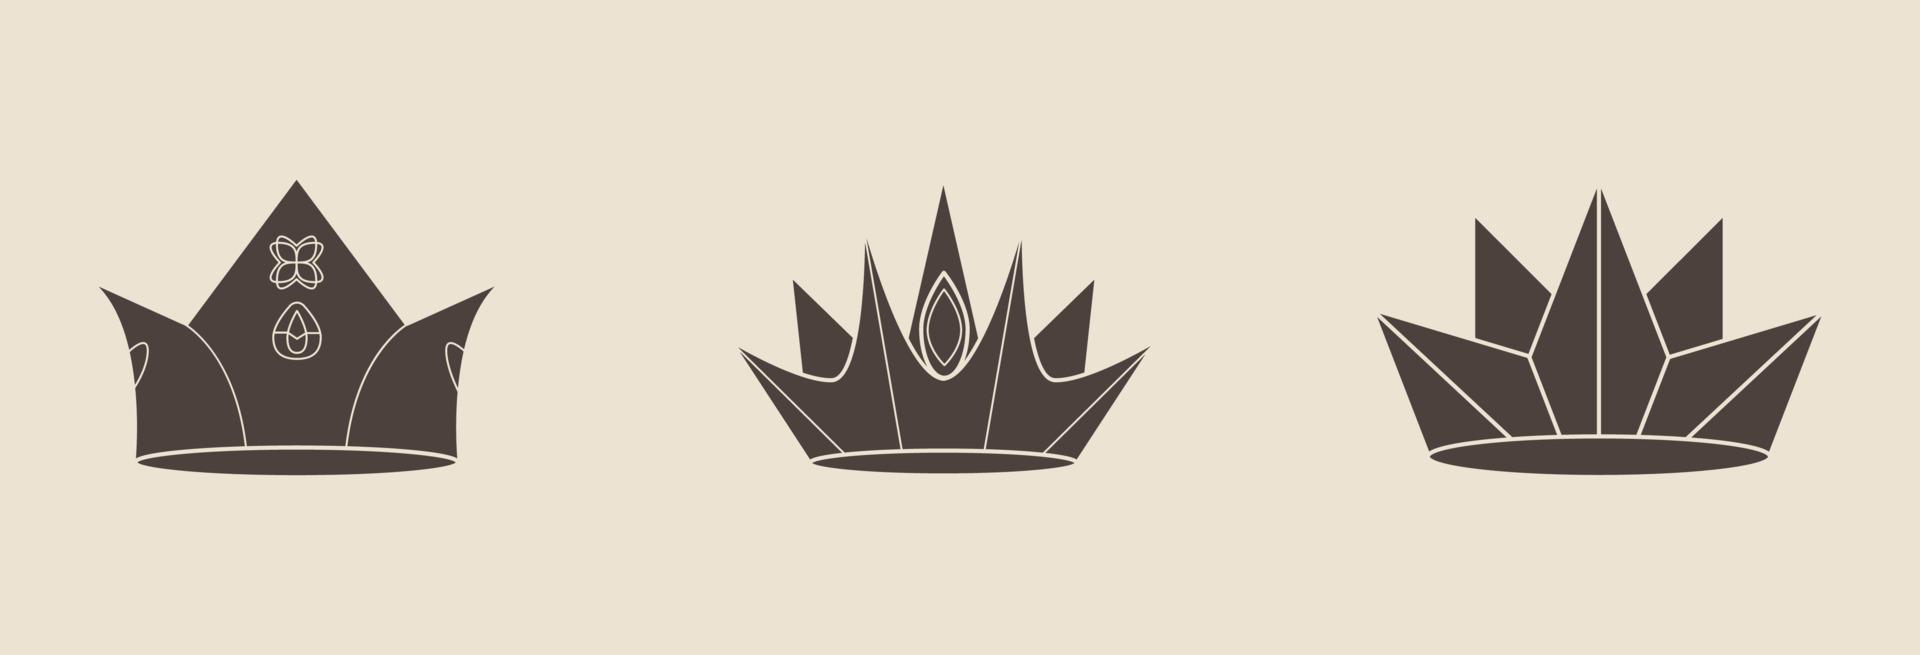 collection de couronnes royales. collection de couronnes de qualité. icônes de couronne vintage. illustration vectorielle vecteur